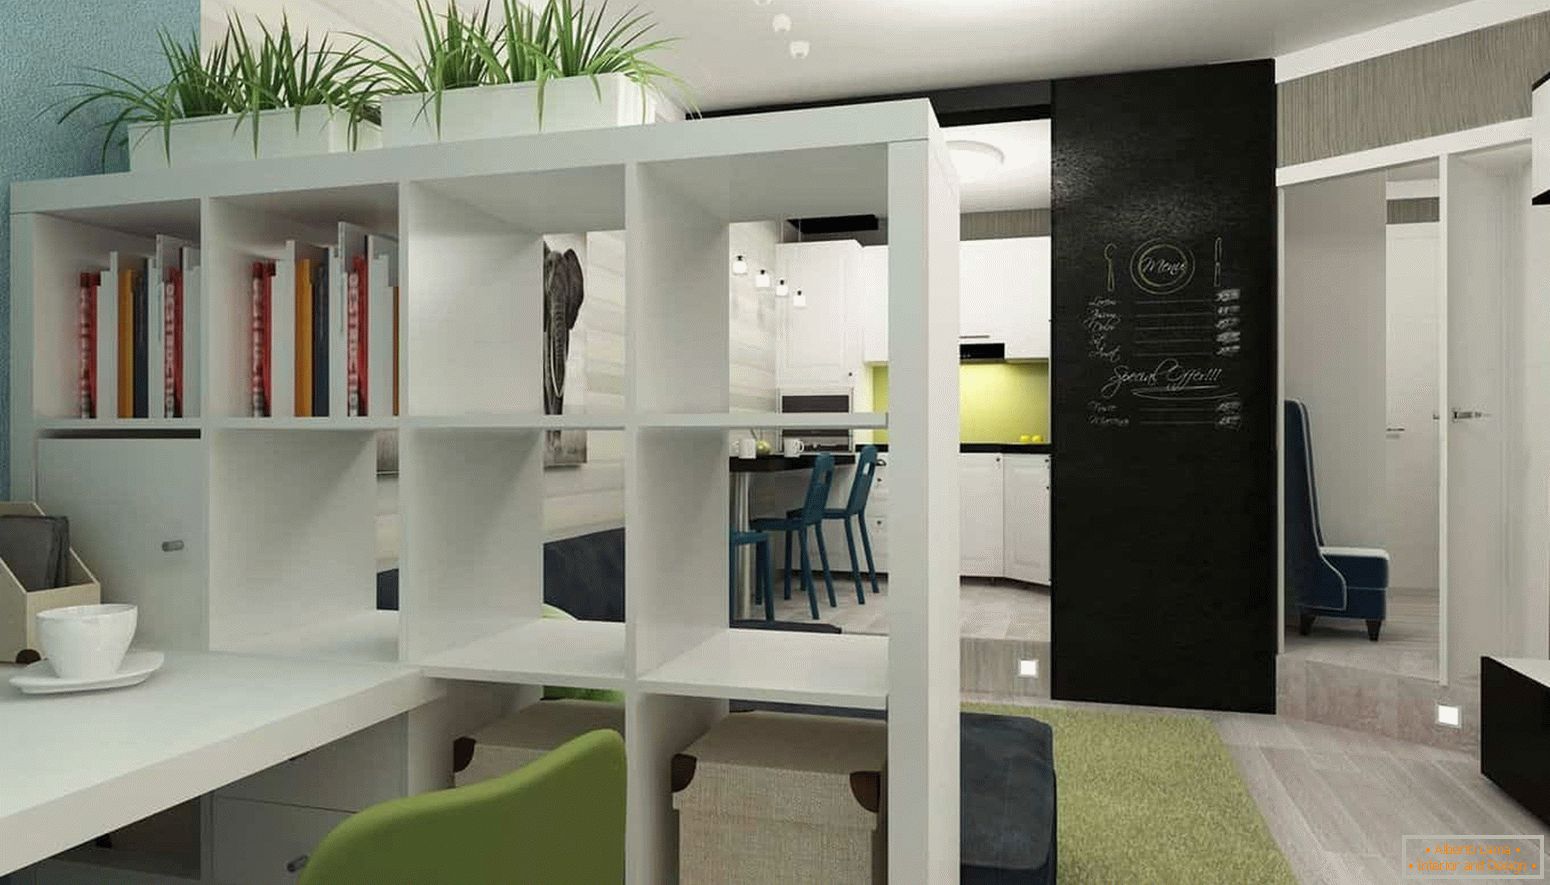 Tudo o que é necessário no design de interiores de um pequeno apartamento, cozinha, sala de estar e estudo